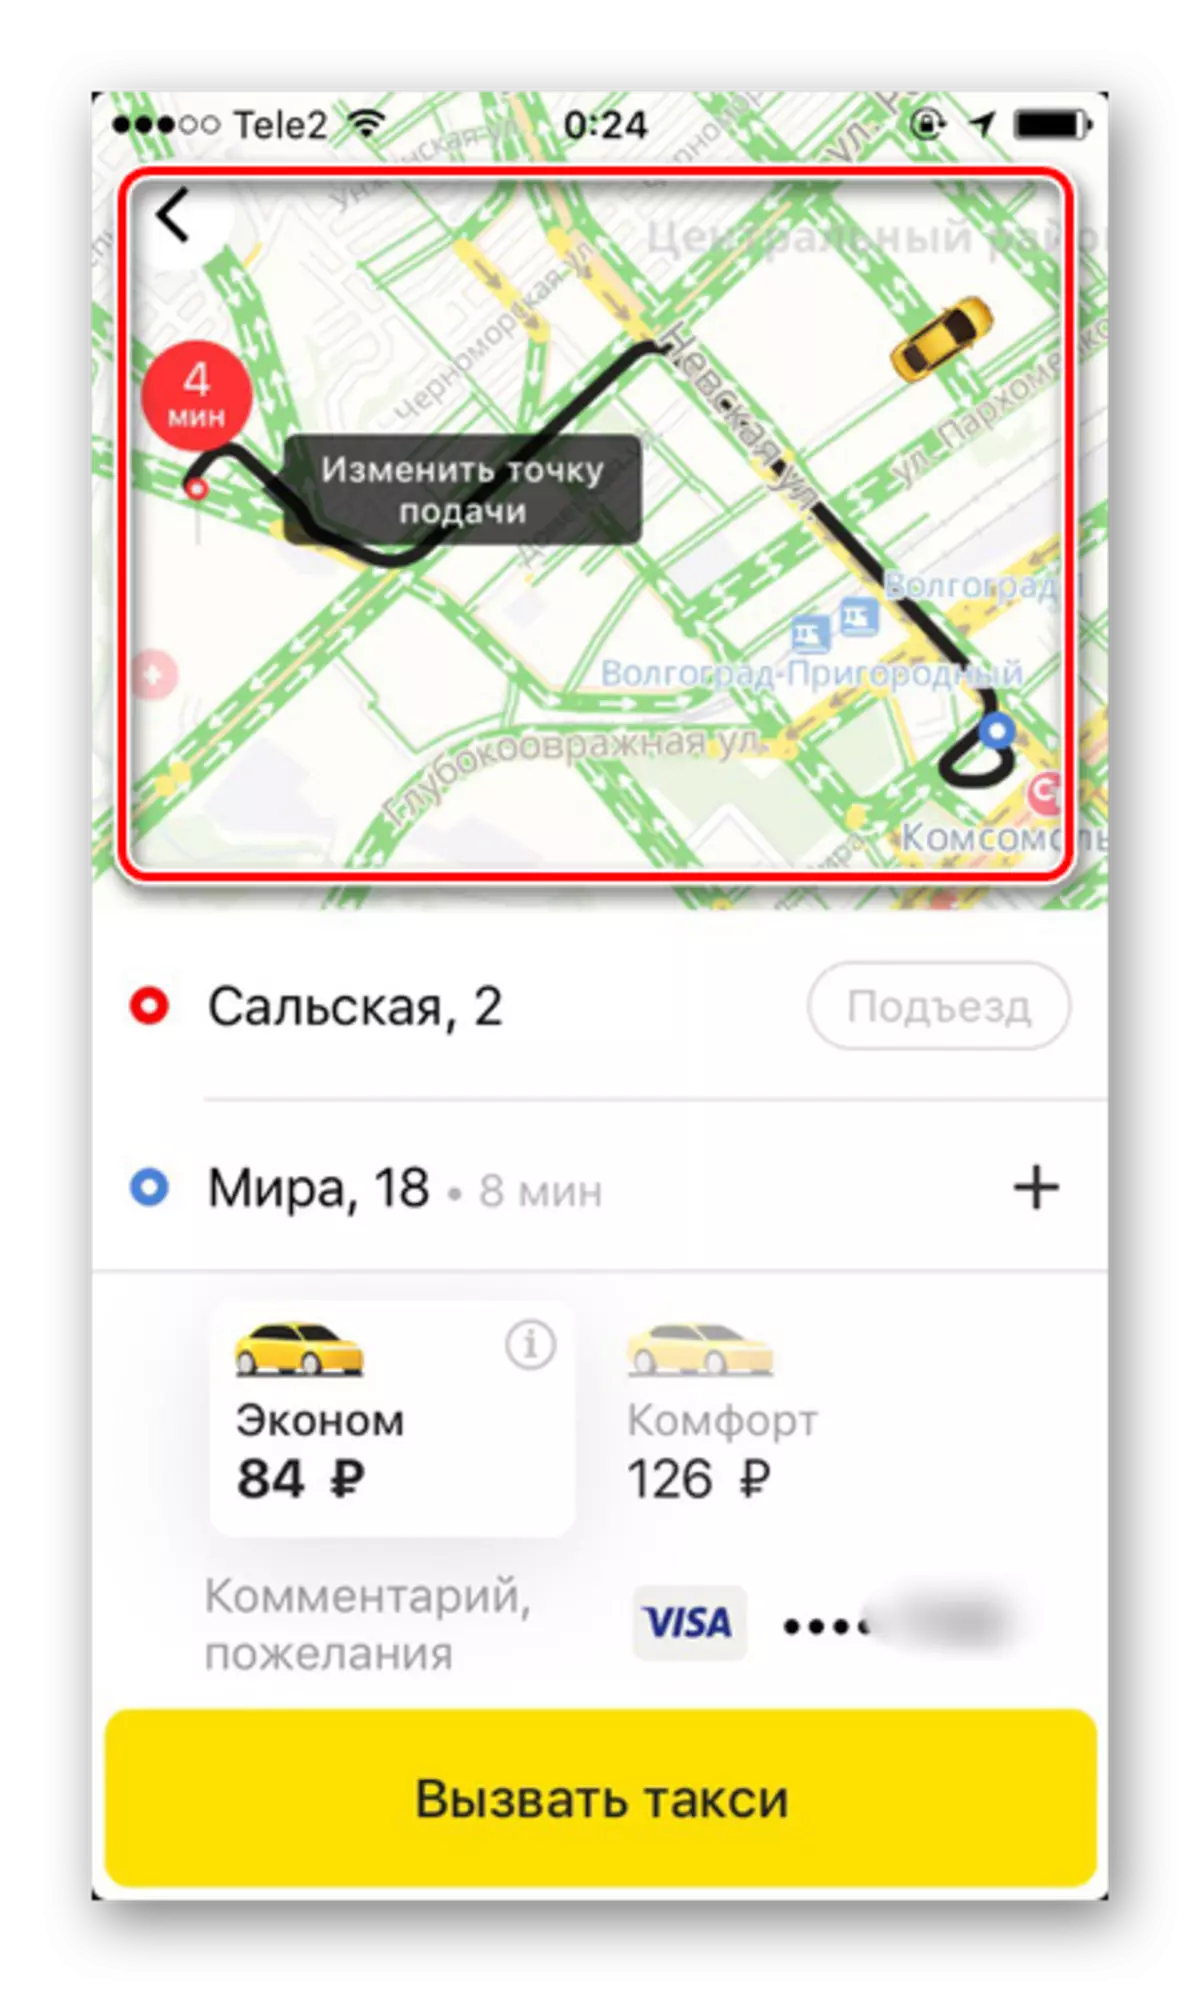 پیش بینی شده در برنامه Yandex.Taxi بر روی آی فون